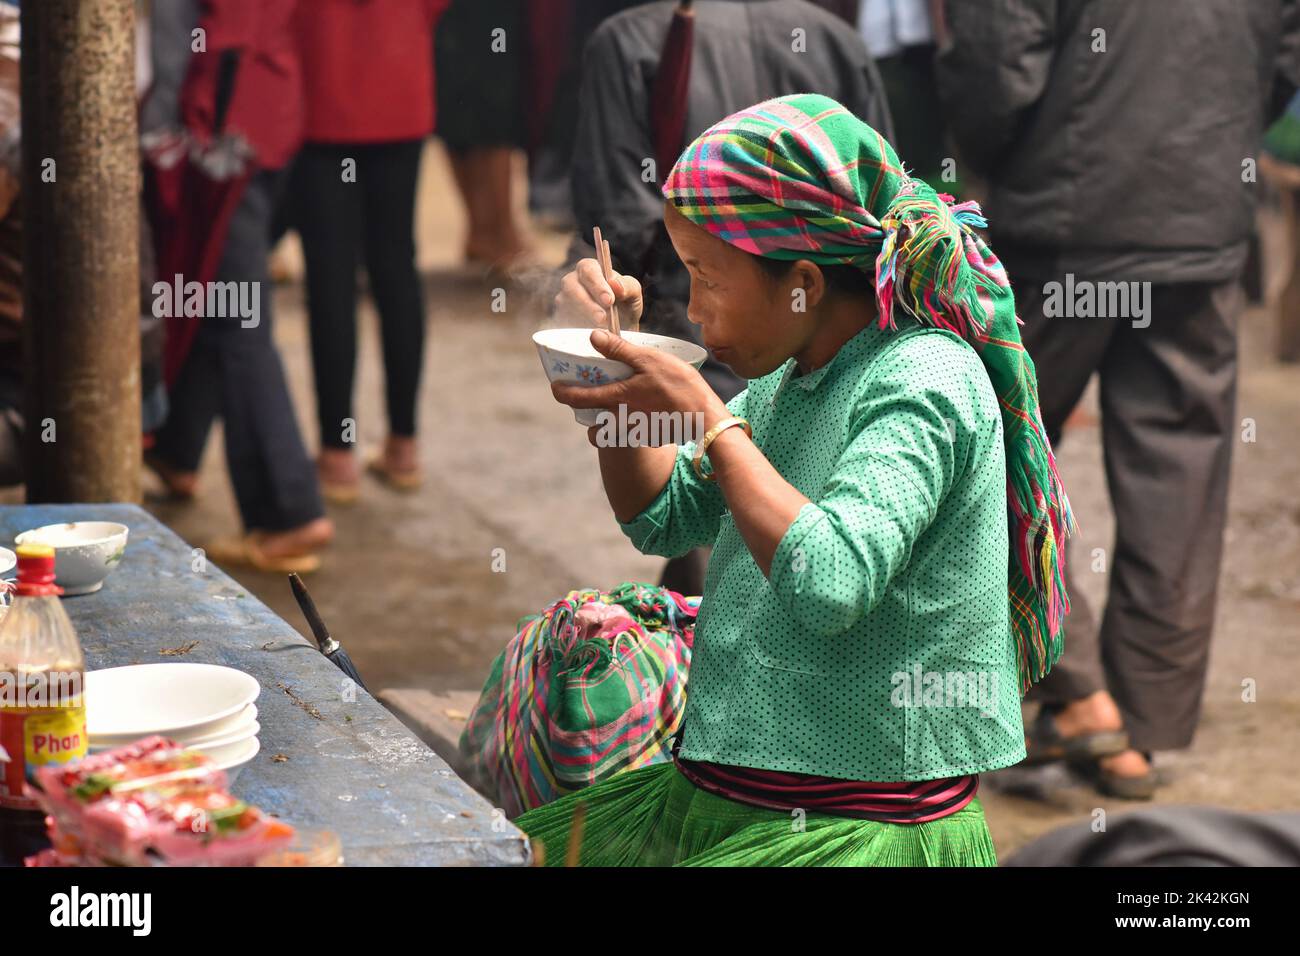 Donna di un gruppo etnico vietnamita che indossa abiti colorati tradizionali, pranzando nel mercato coperto della cittadina di Meo Vac, Vietnam. Foto Stock